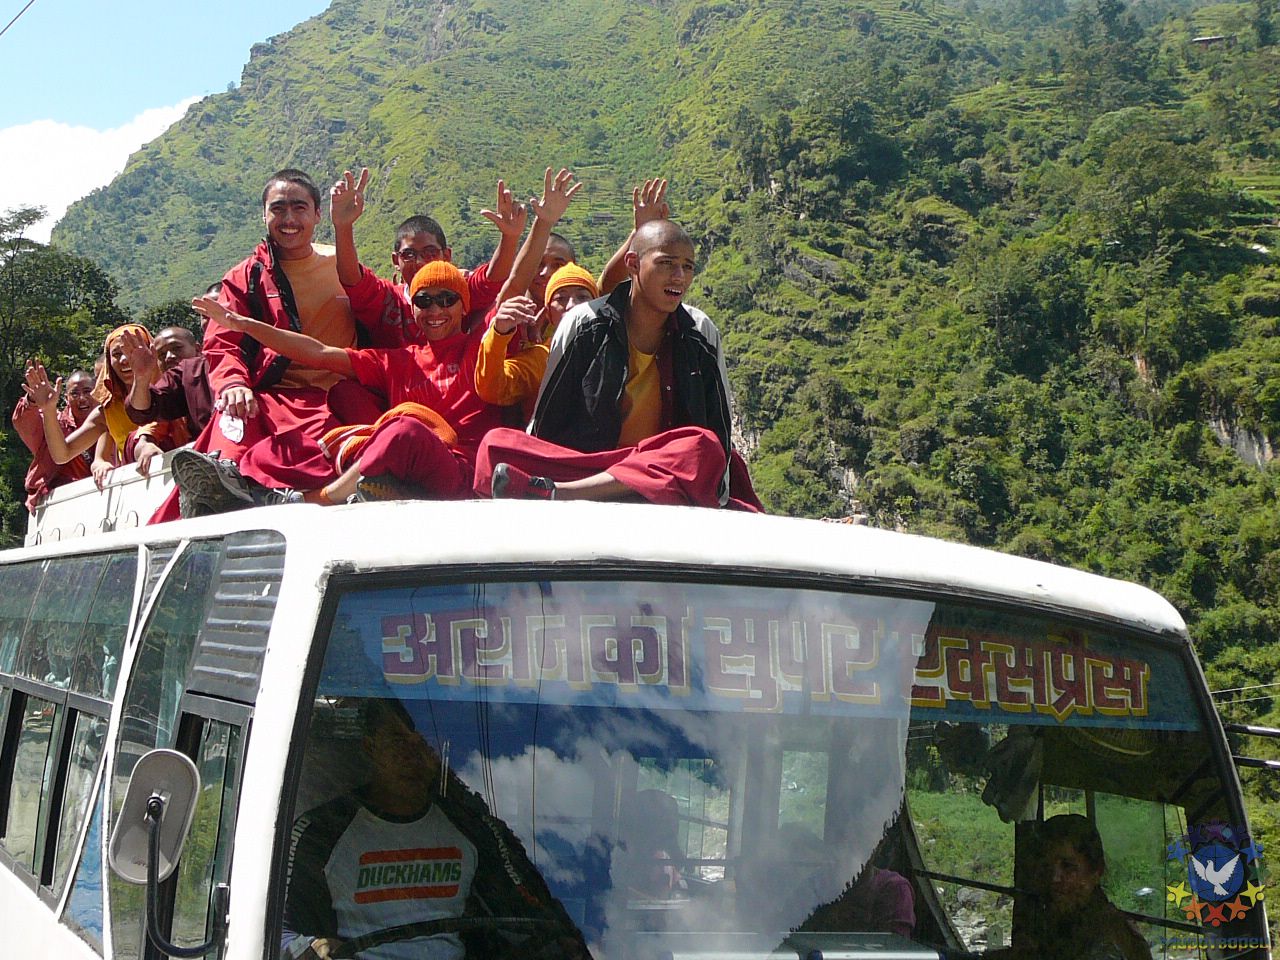 Непальские паломники едут к Кайлашу. - Тибет 2006. Фотовоспоминание 5 лет спустя.